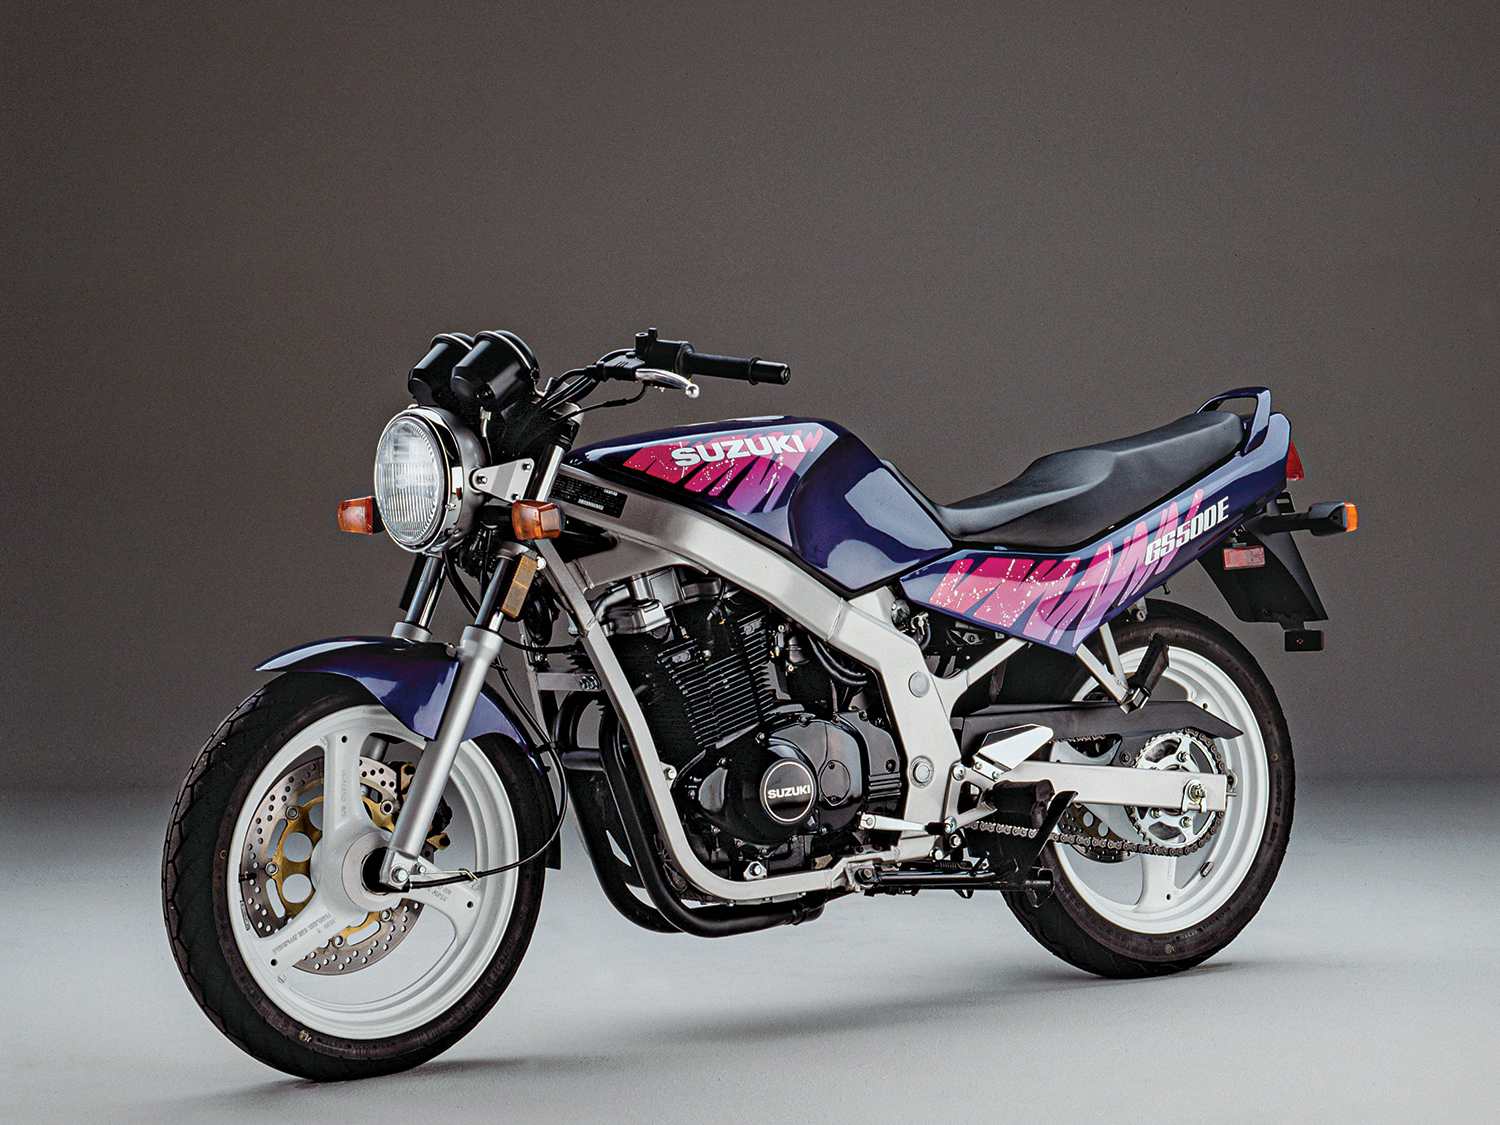 Rebuilt 2002 Suzuki GS500 : r/motorcycle